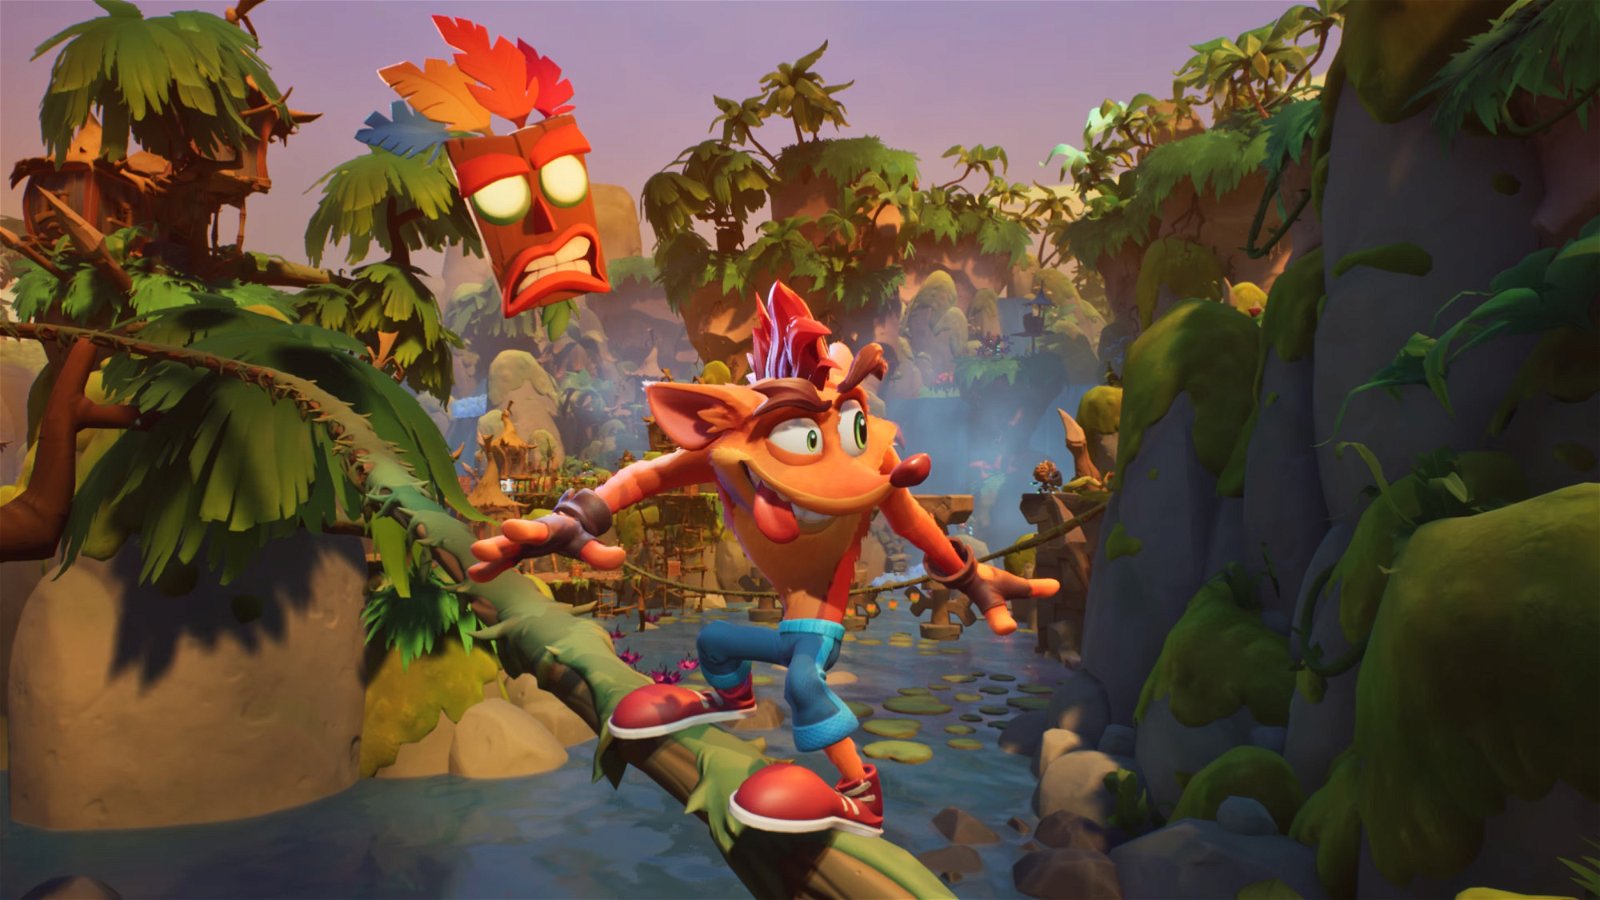 Crash Bandicoot arriva al cinema? Gli sviluppatori chiedono "aiuto" a Sony